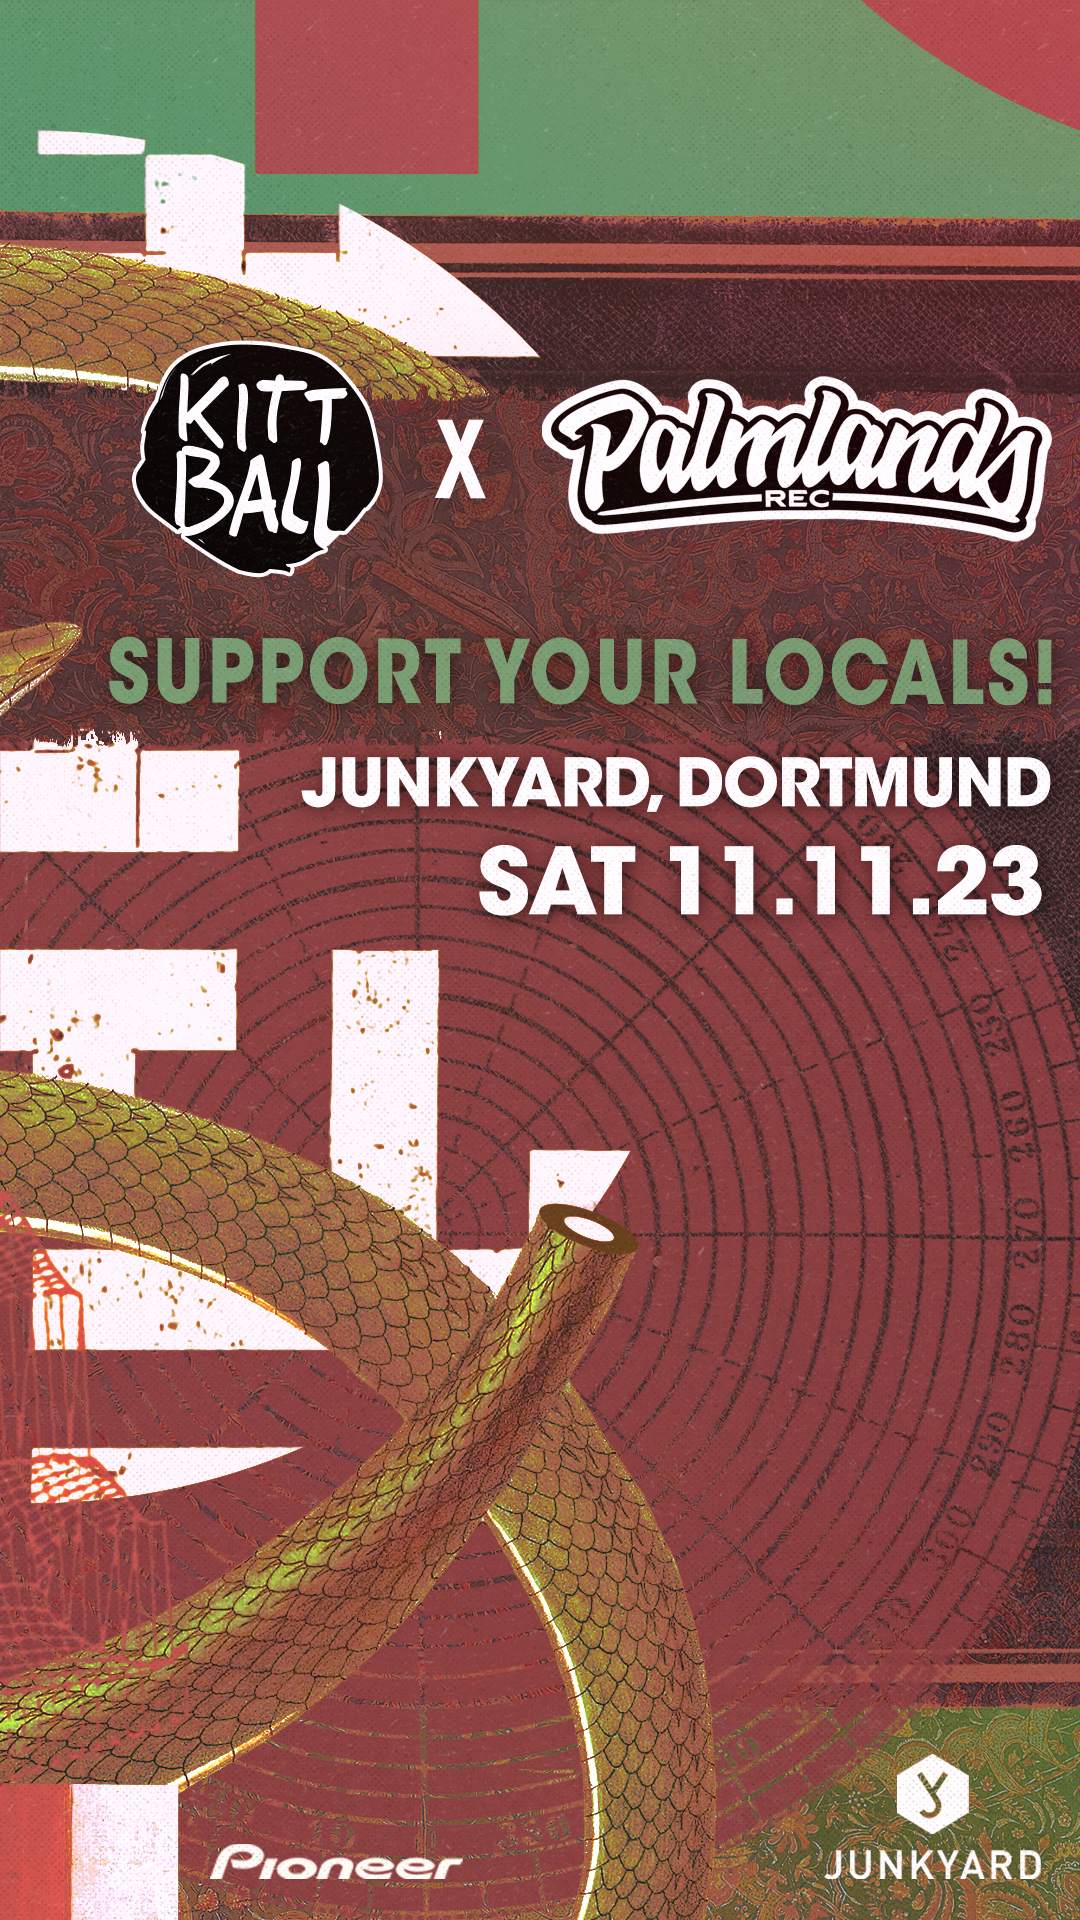 Kittball x Palmlands - Support your locals - フライヤー表